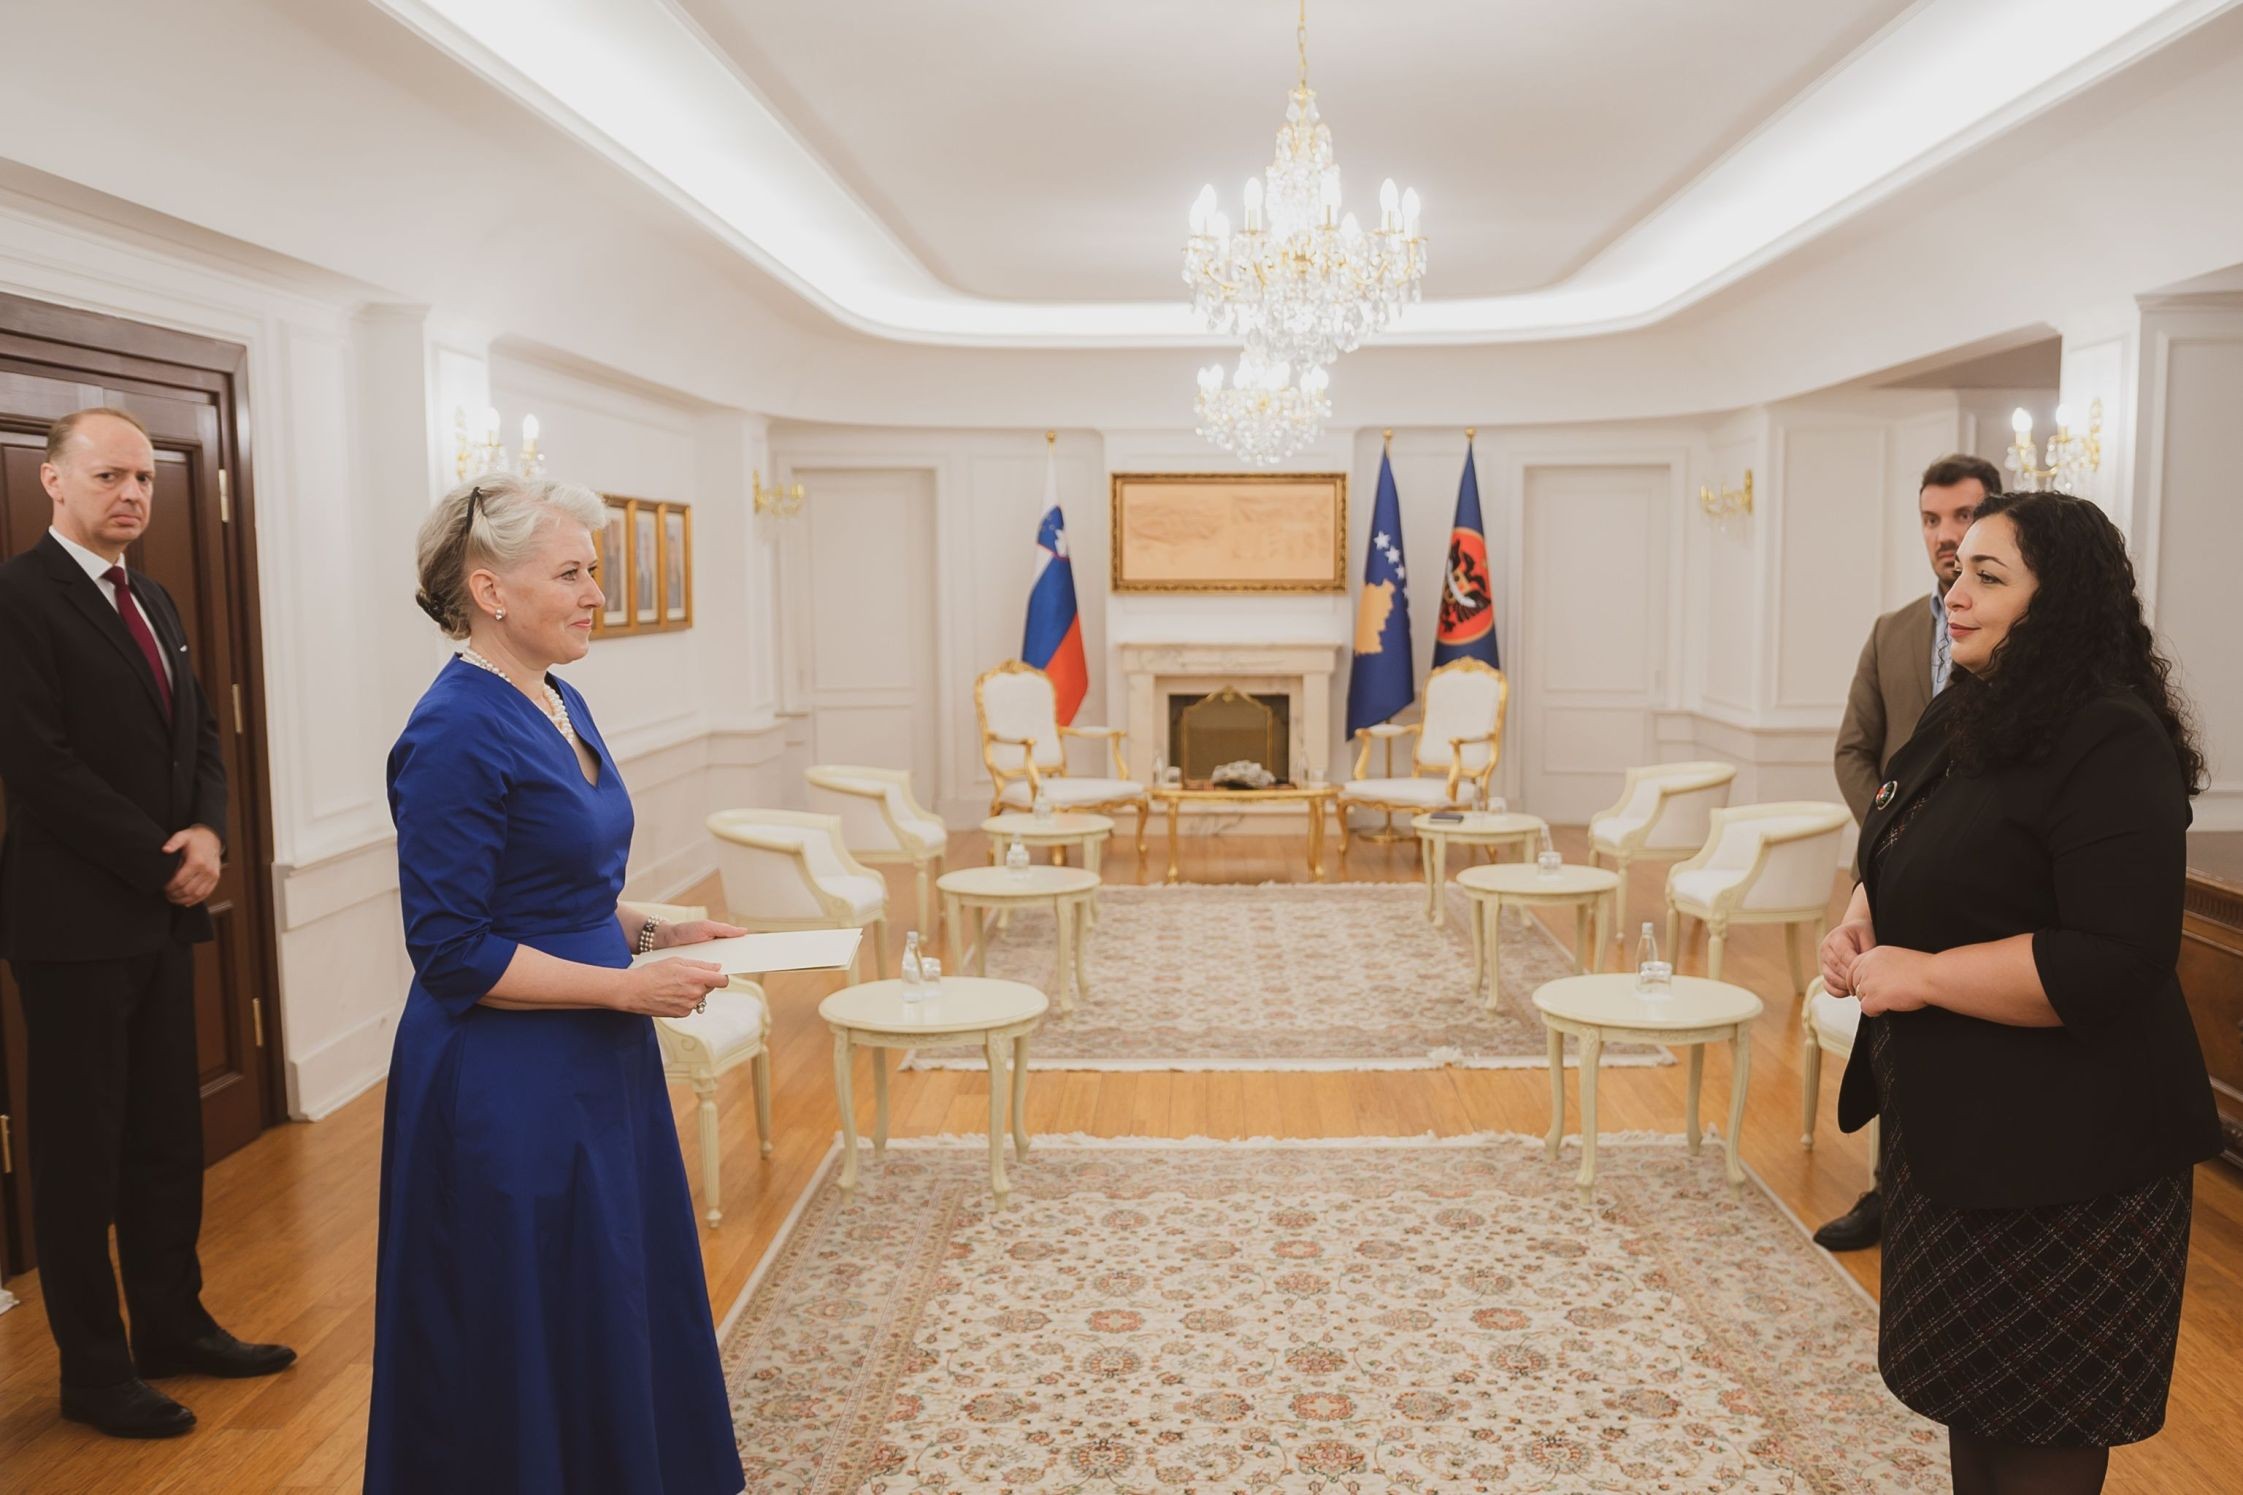 Presidentja Osmani i pranoi sot letrat kredenciale nga ambasadorja e Sllovenisë